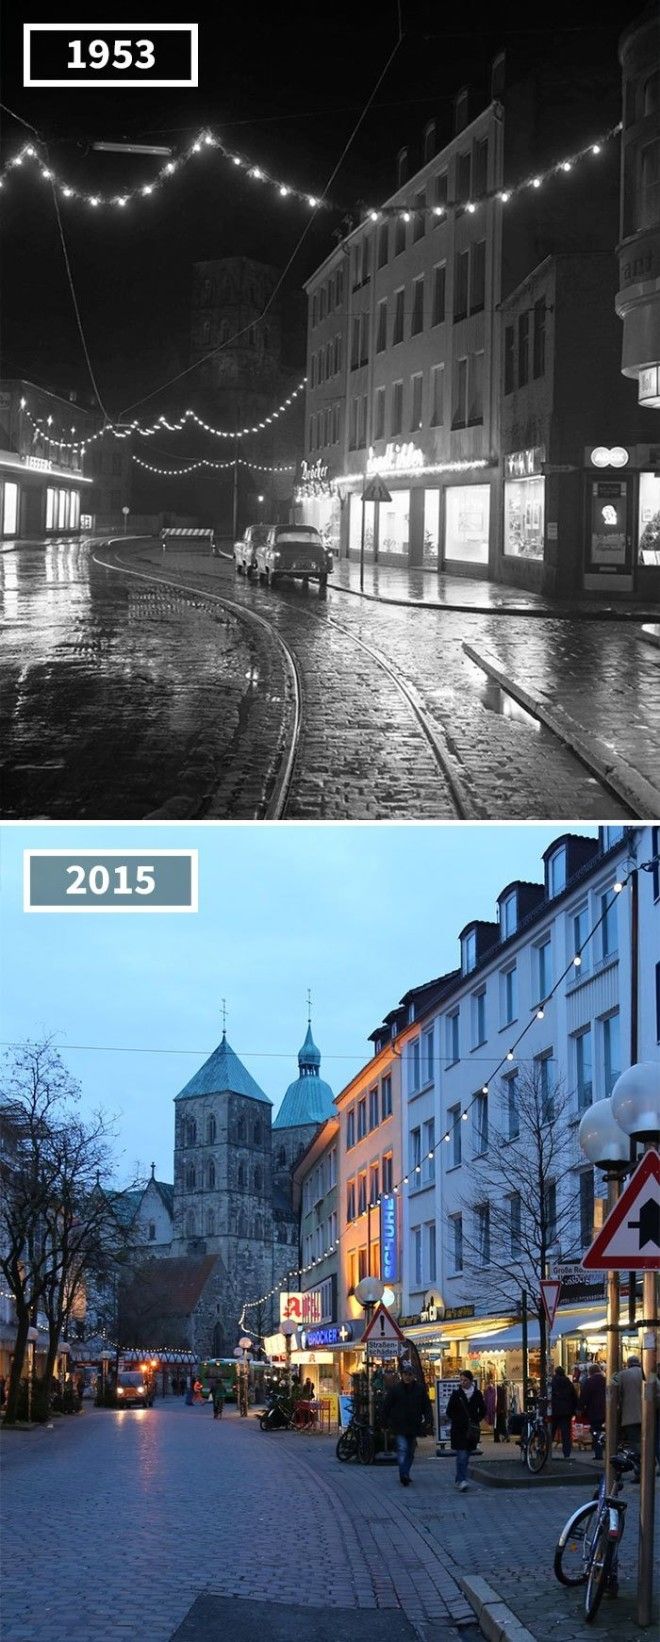 Оснабрюк Германия 1953 2015 История в фотографиях бег времени города до и после изменения в мире фото фотопроект фотосвидетельства